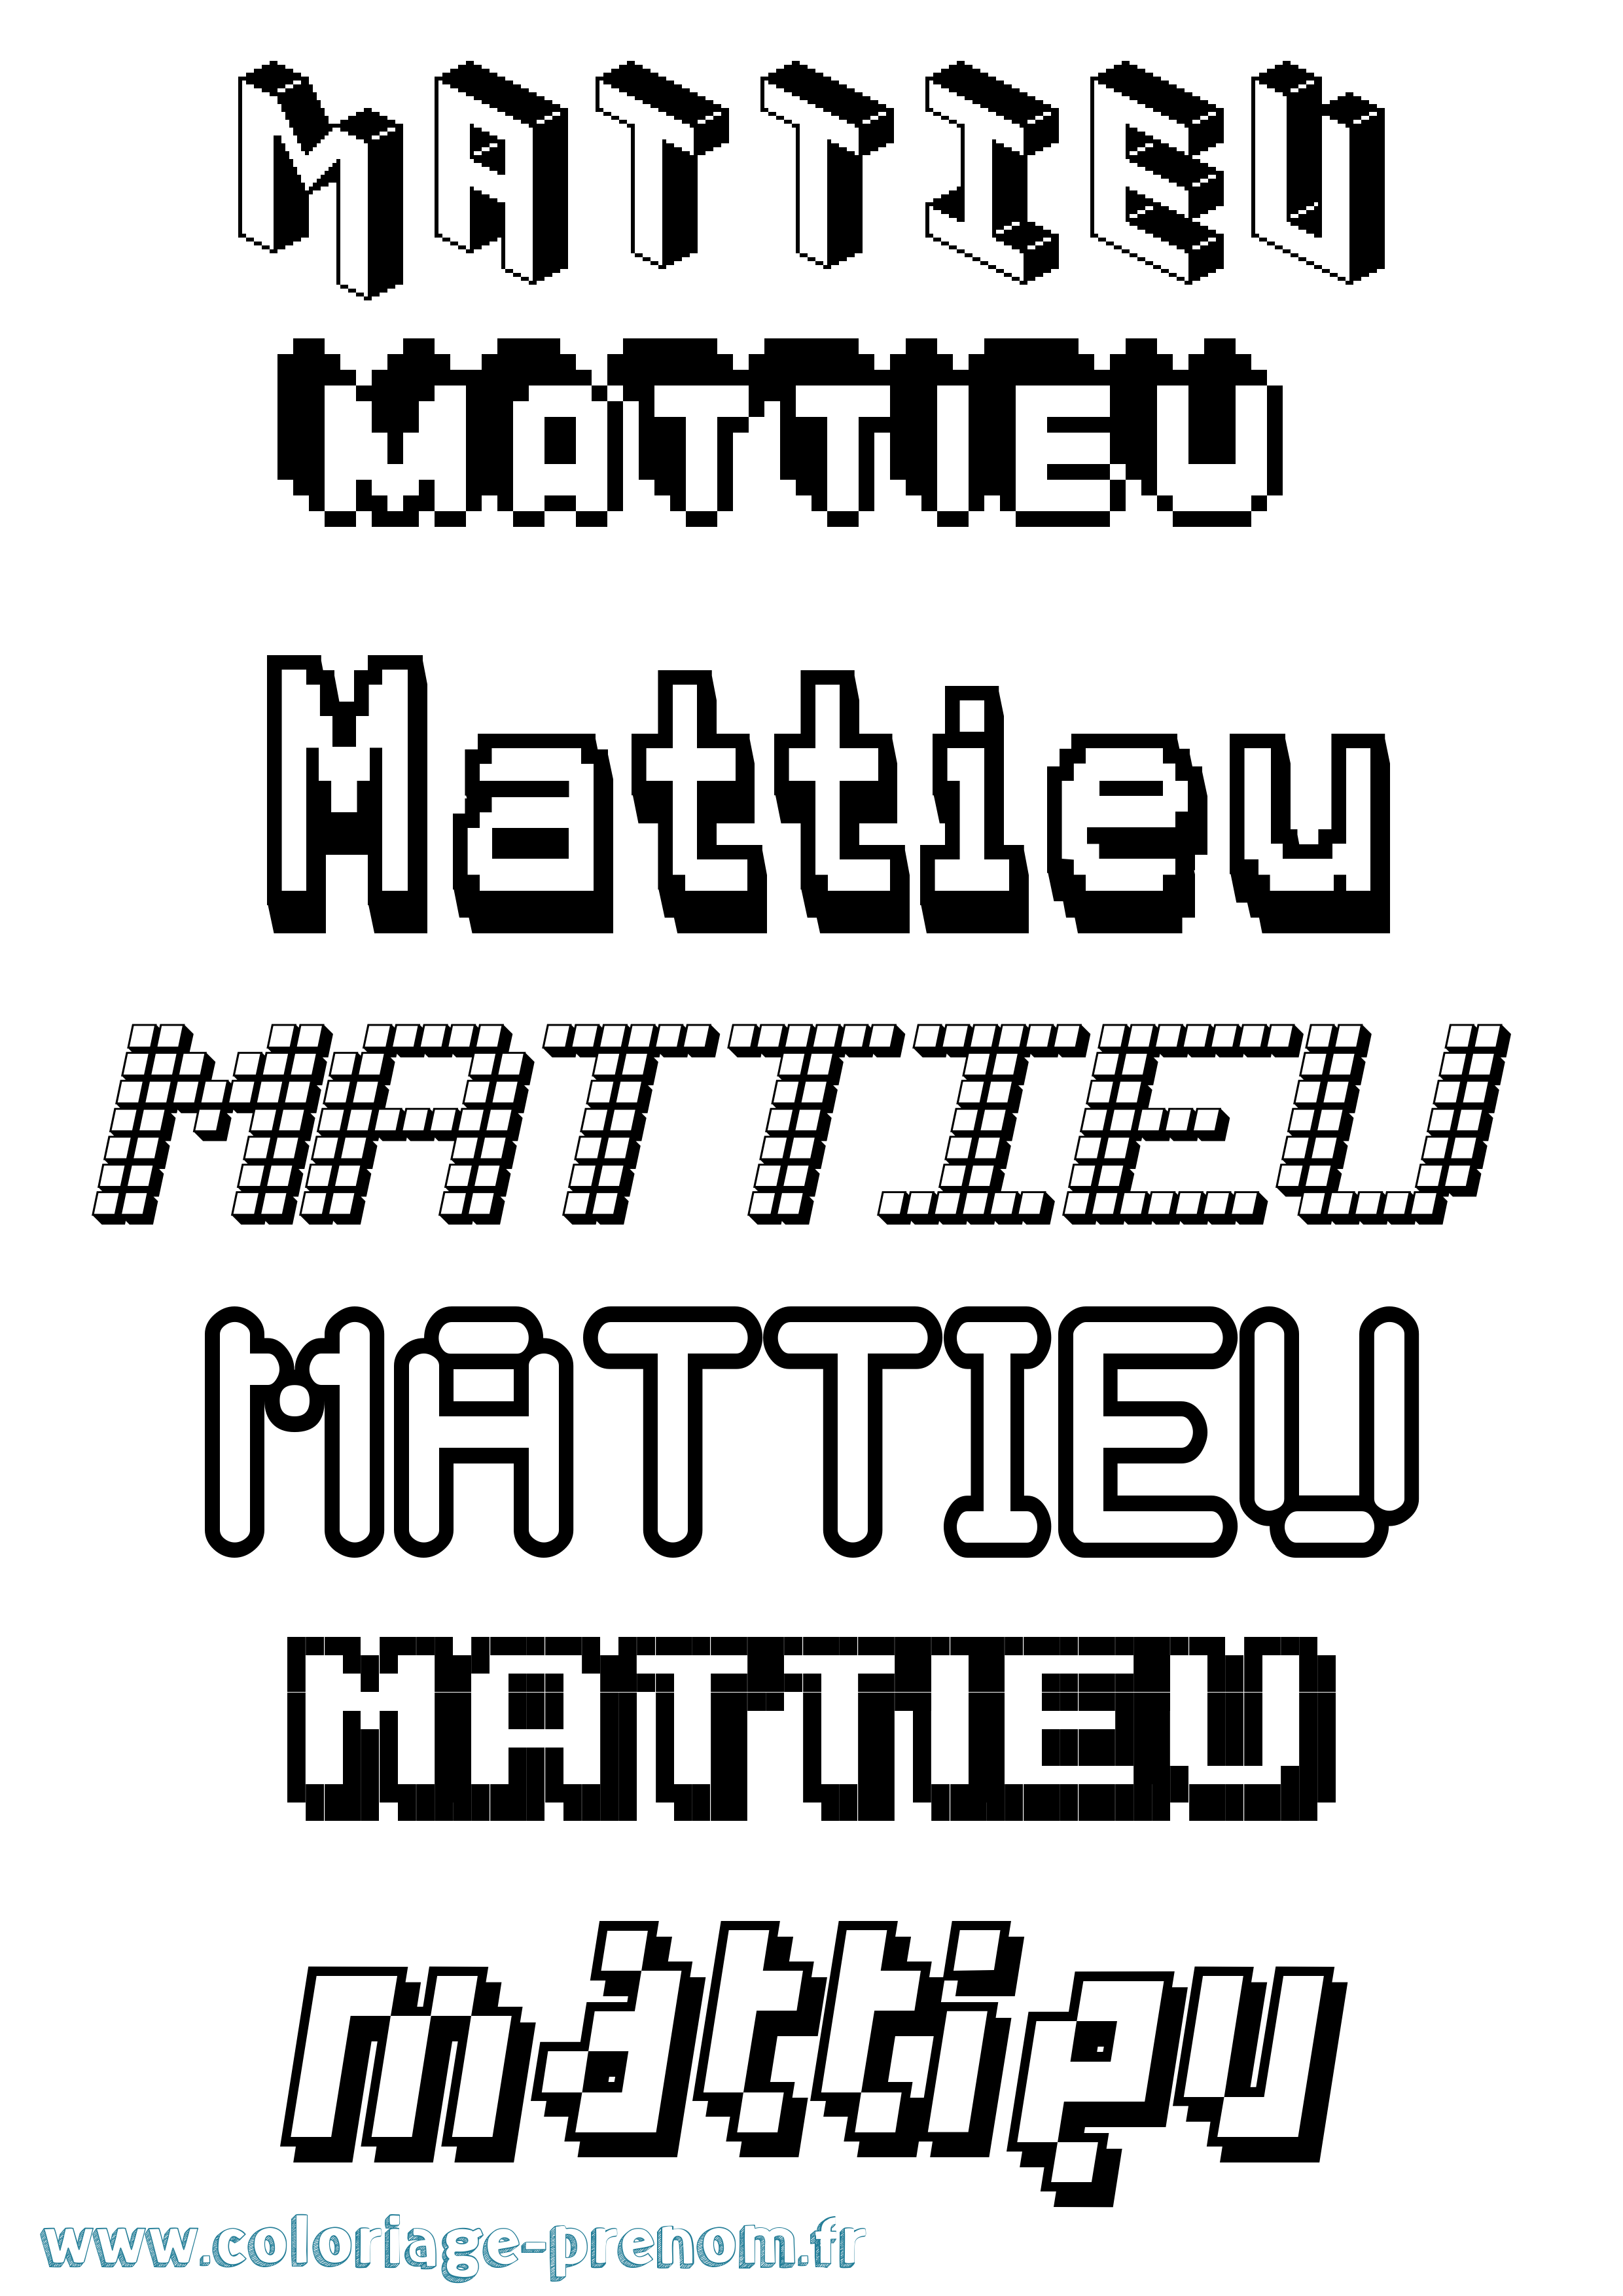 Coloriage prénom Mattieu Pixel